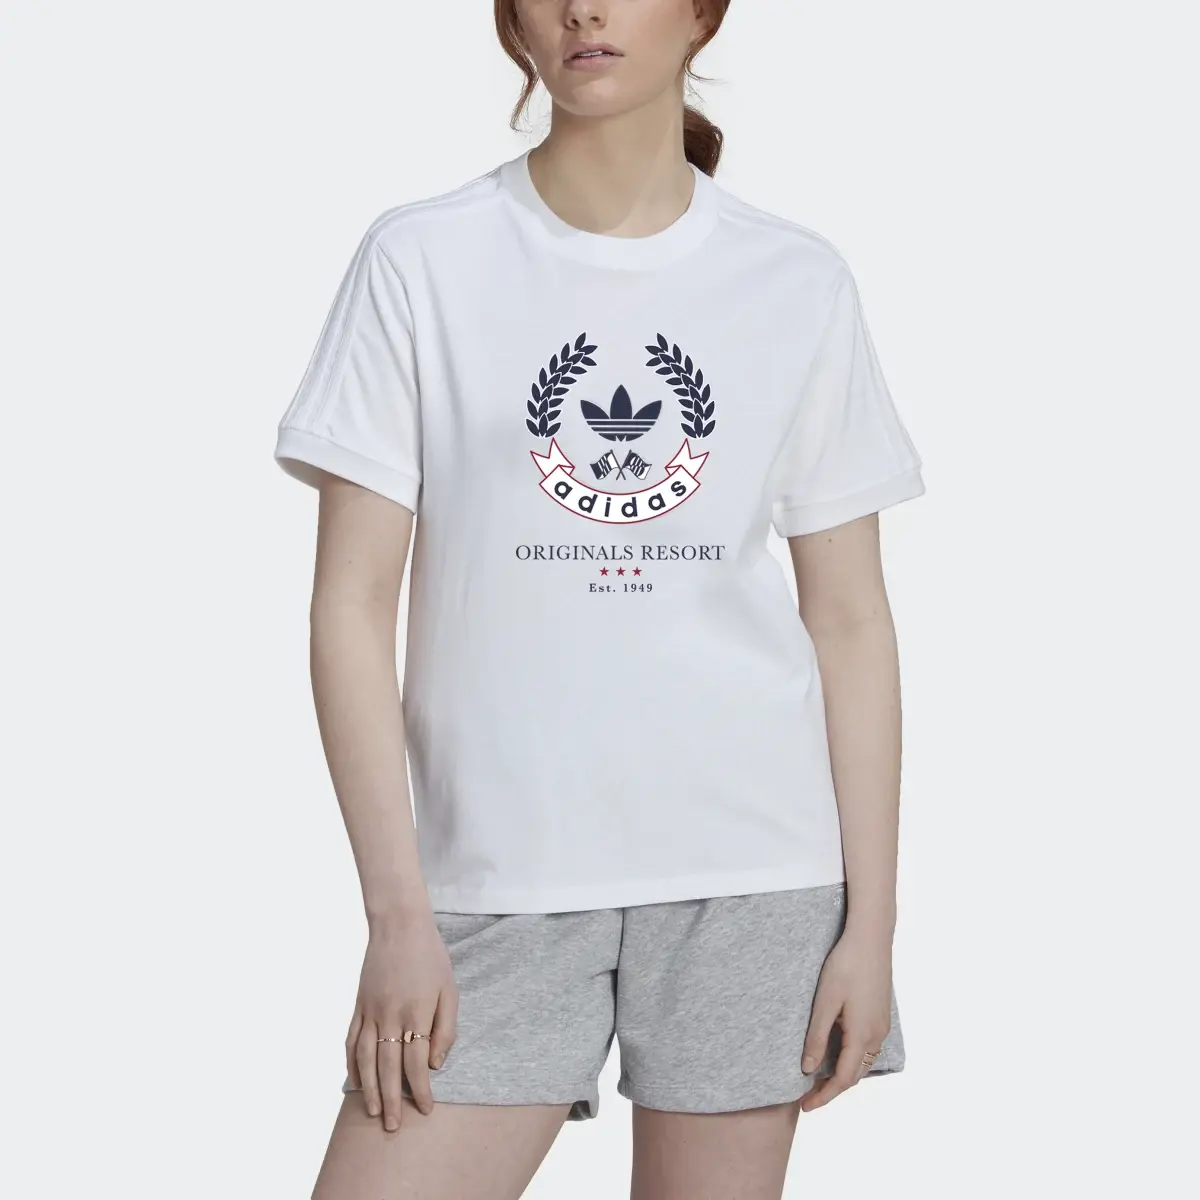 Adidas T-shirt com Emblema. 1